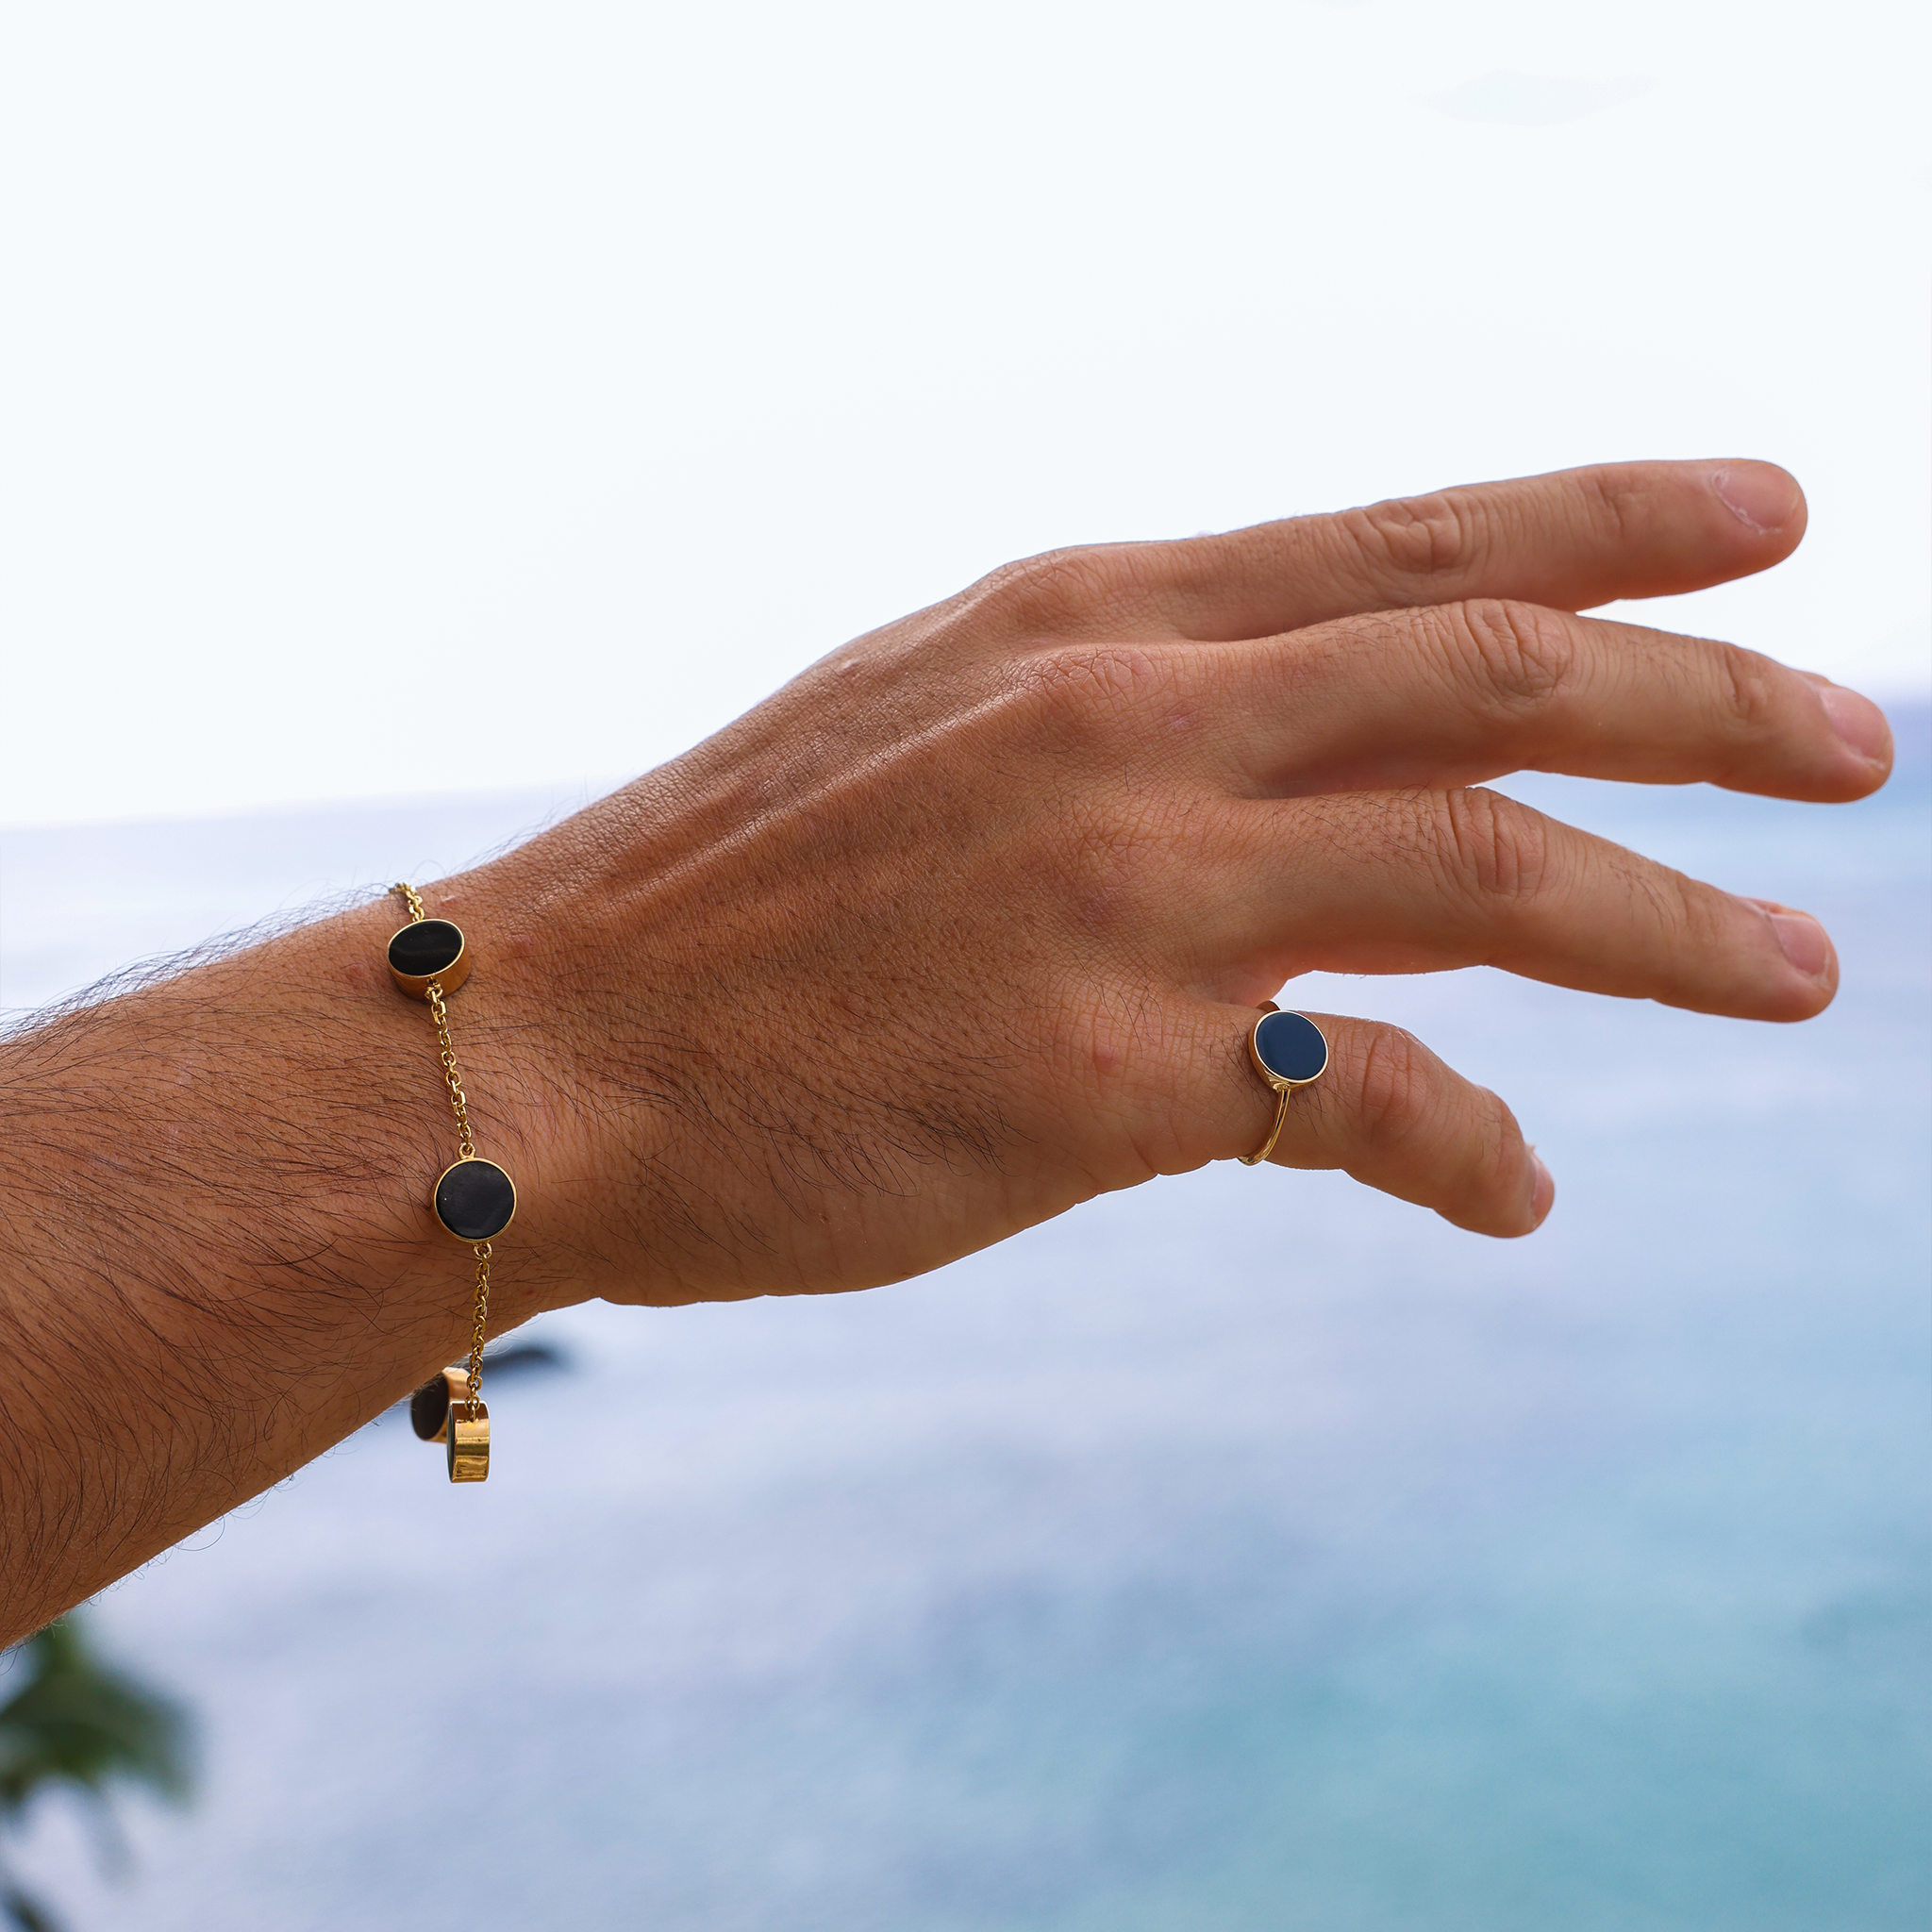 Bracelet de corail noir Eclipse en or - 9 mm - taille 7.25-8 "